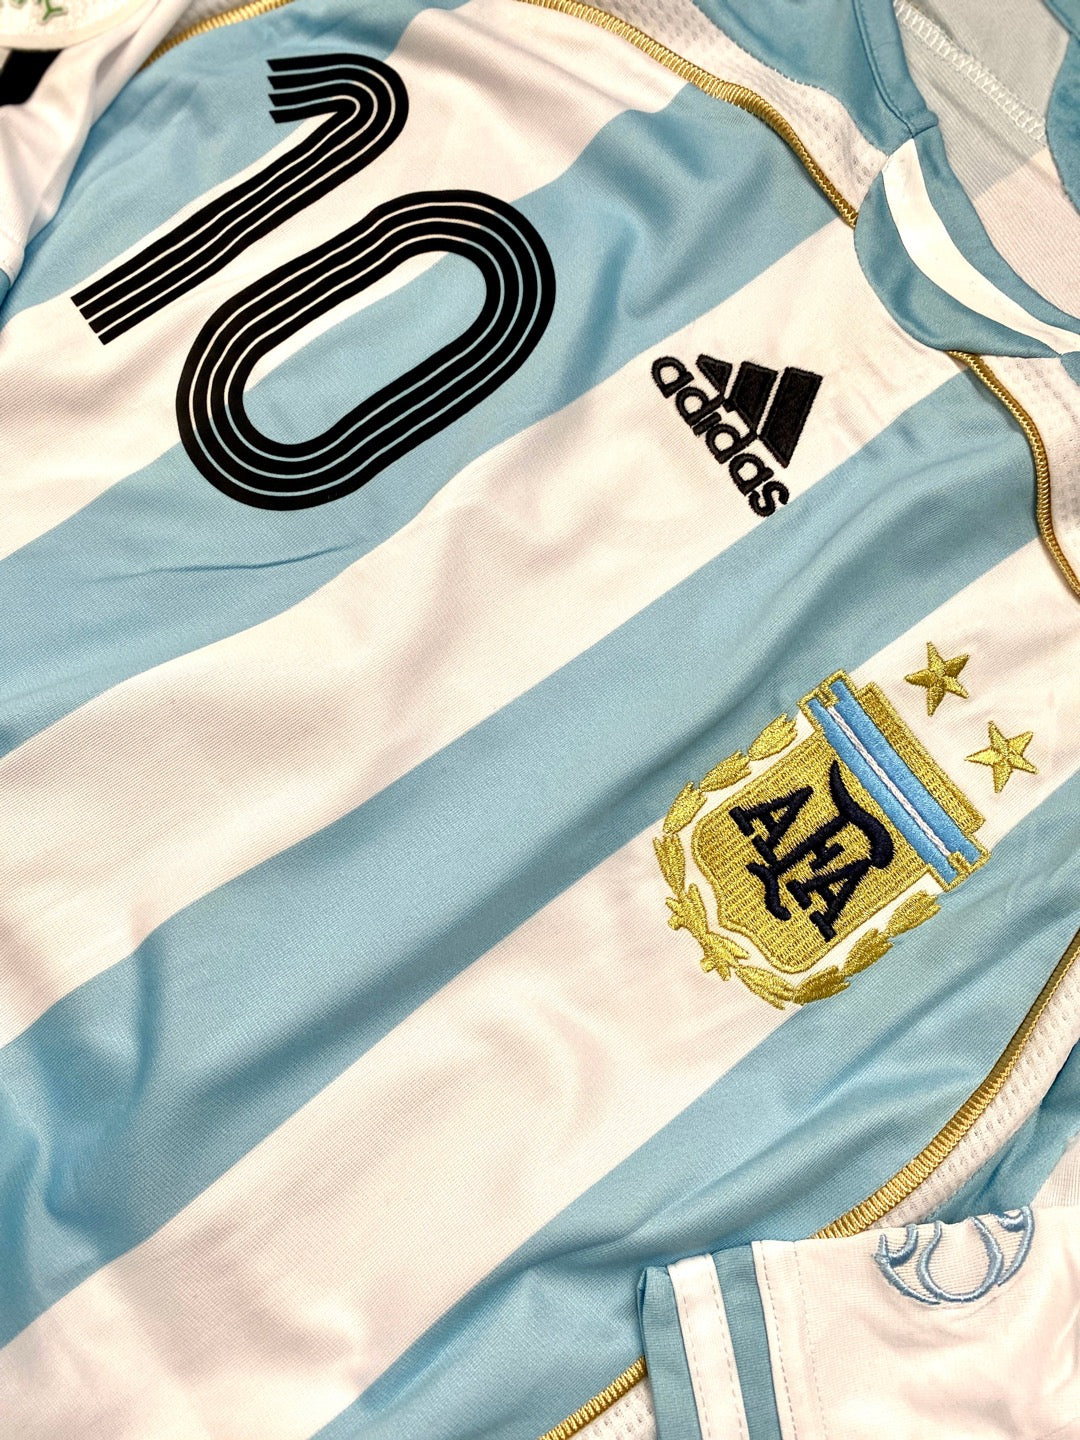 jersey argentina 2006 local detalle